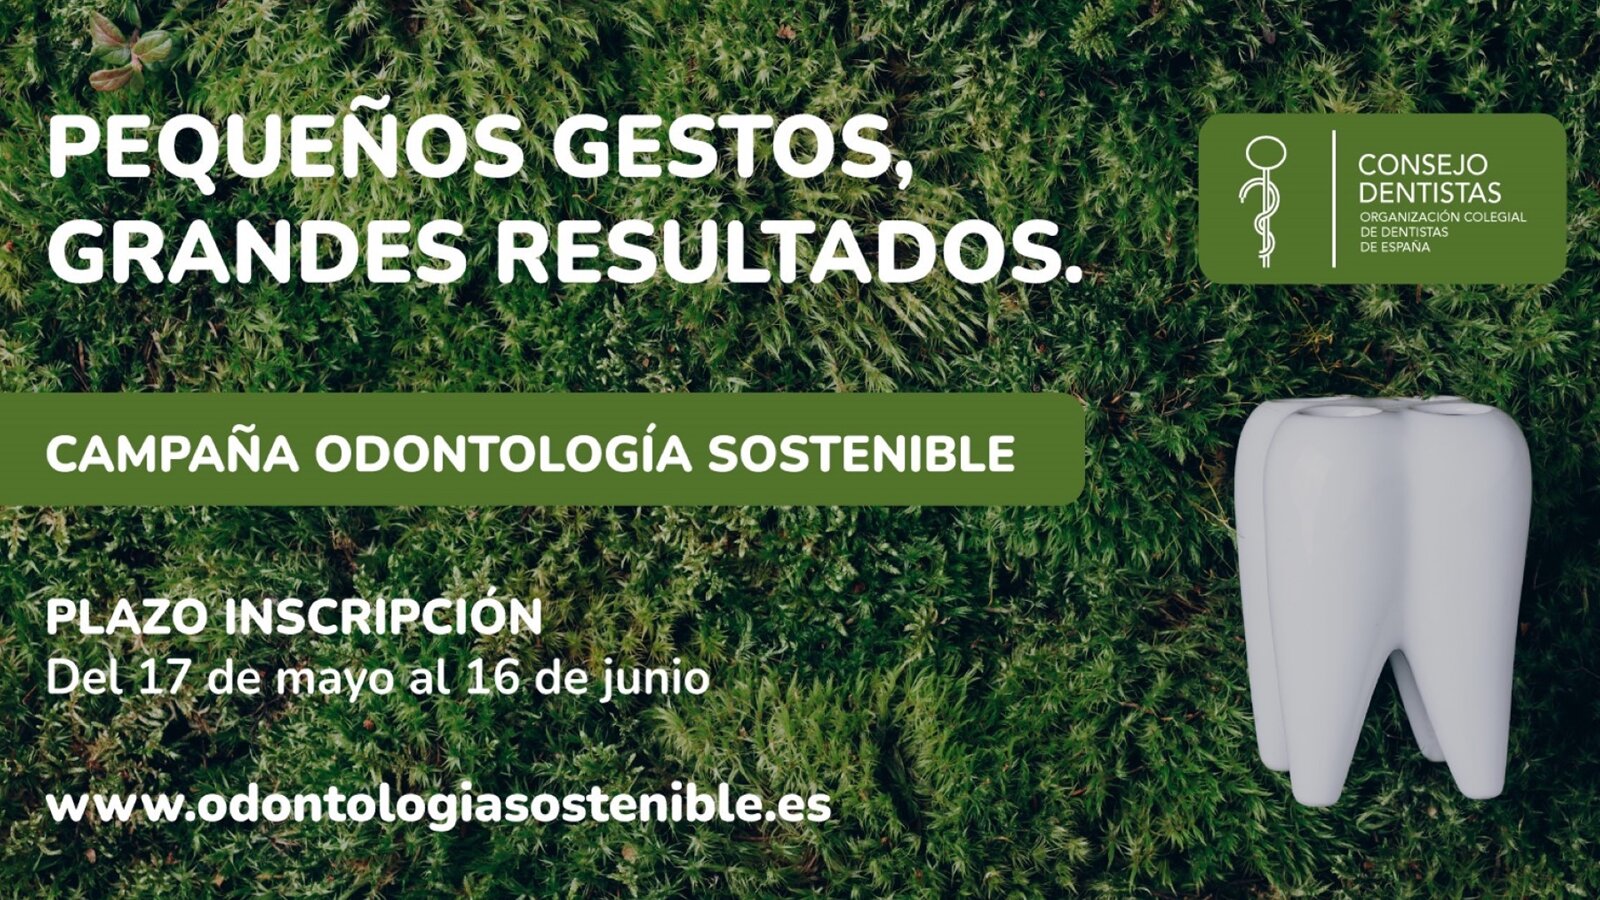 Campaña para promover la Odontología sostenible 